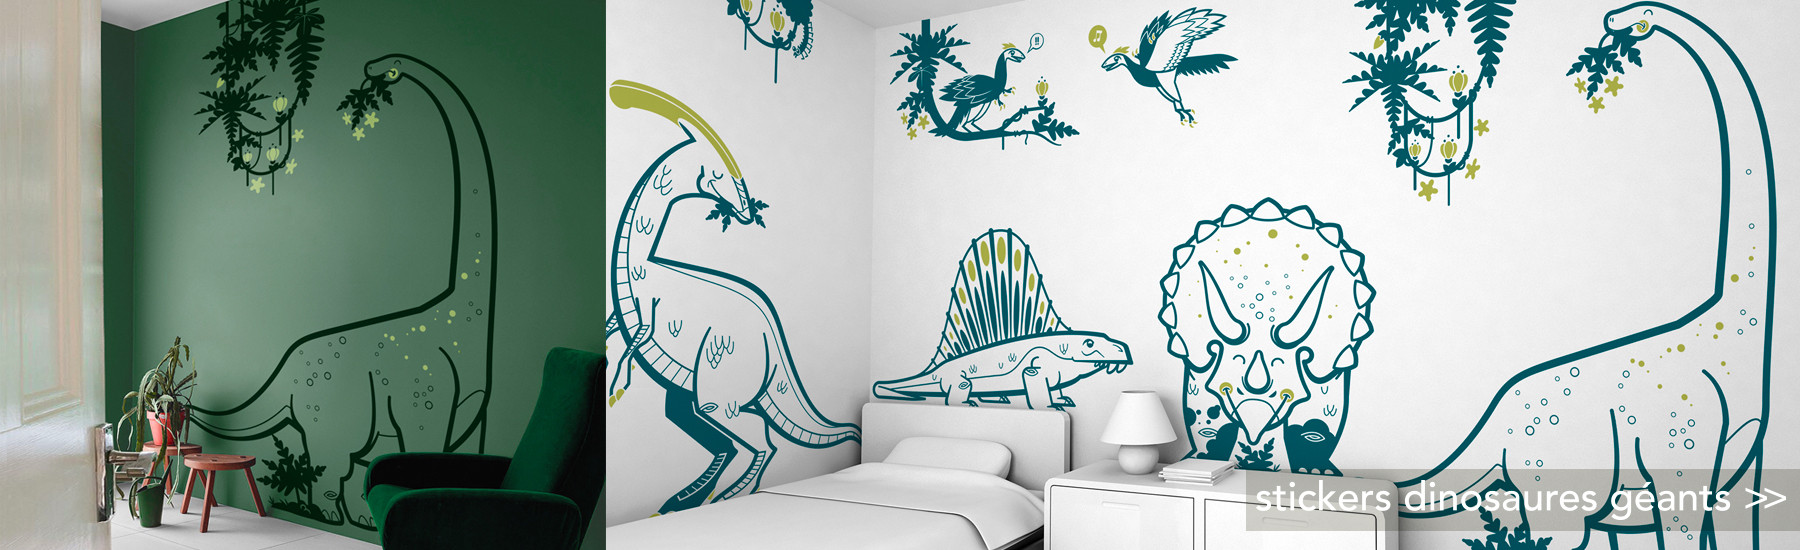 stickers dinosaures géants XXL, décoration murale chambre enfant